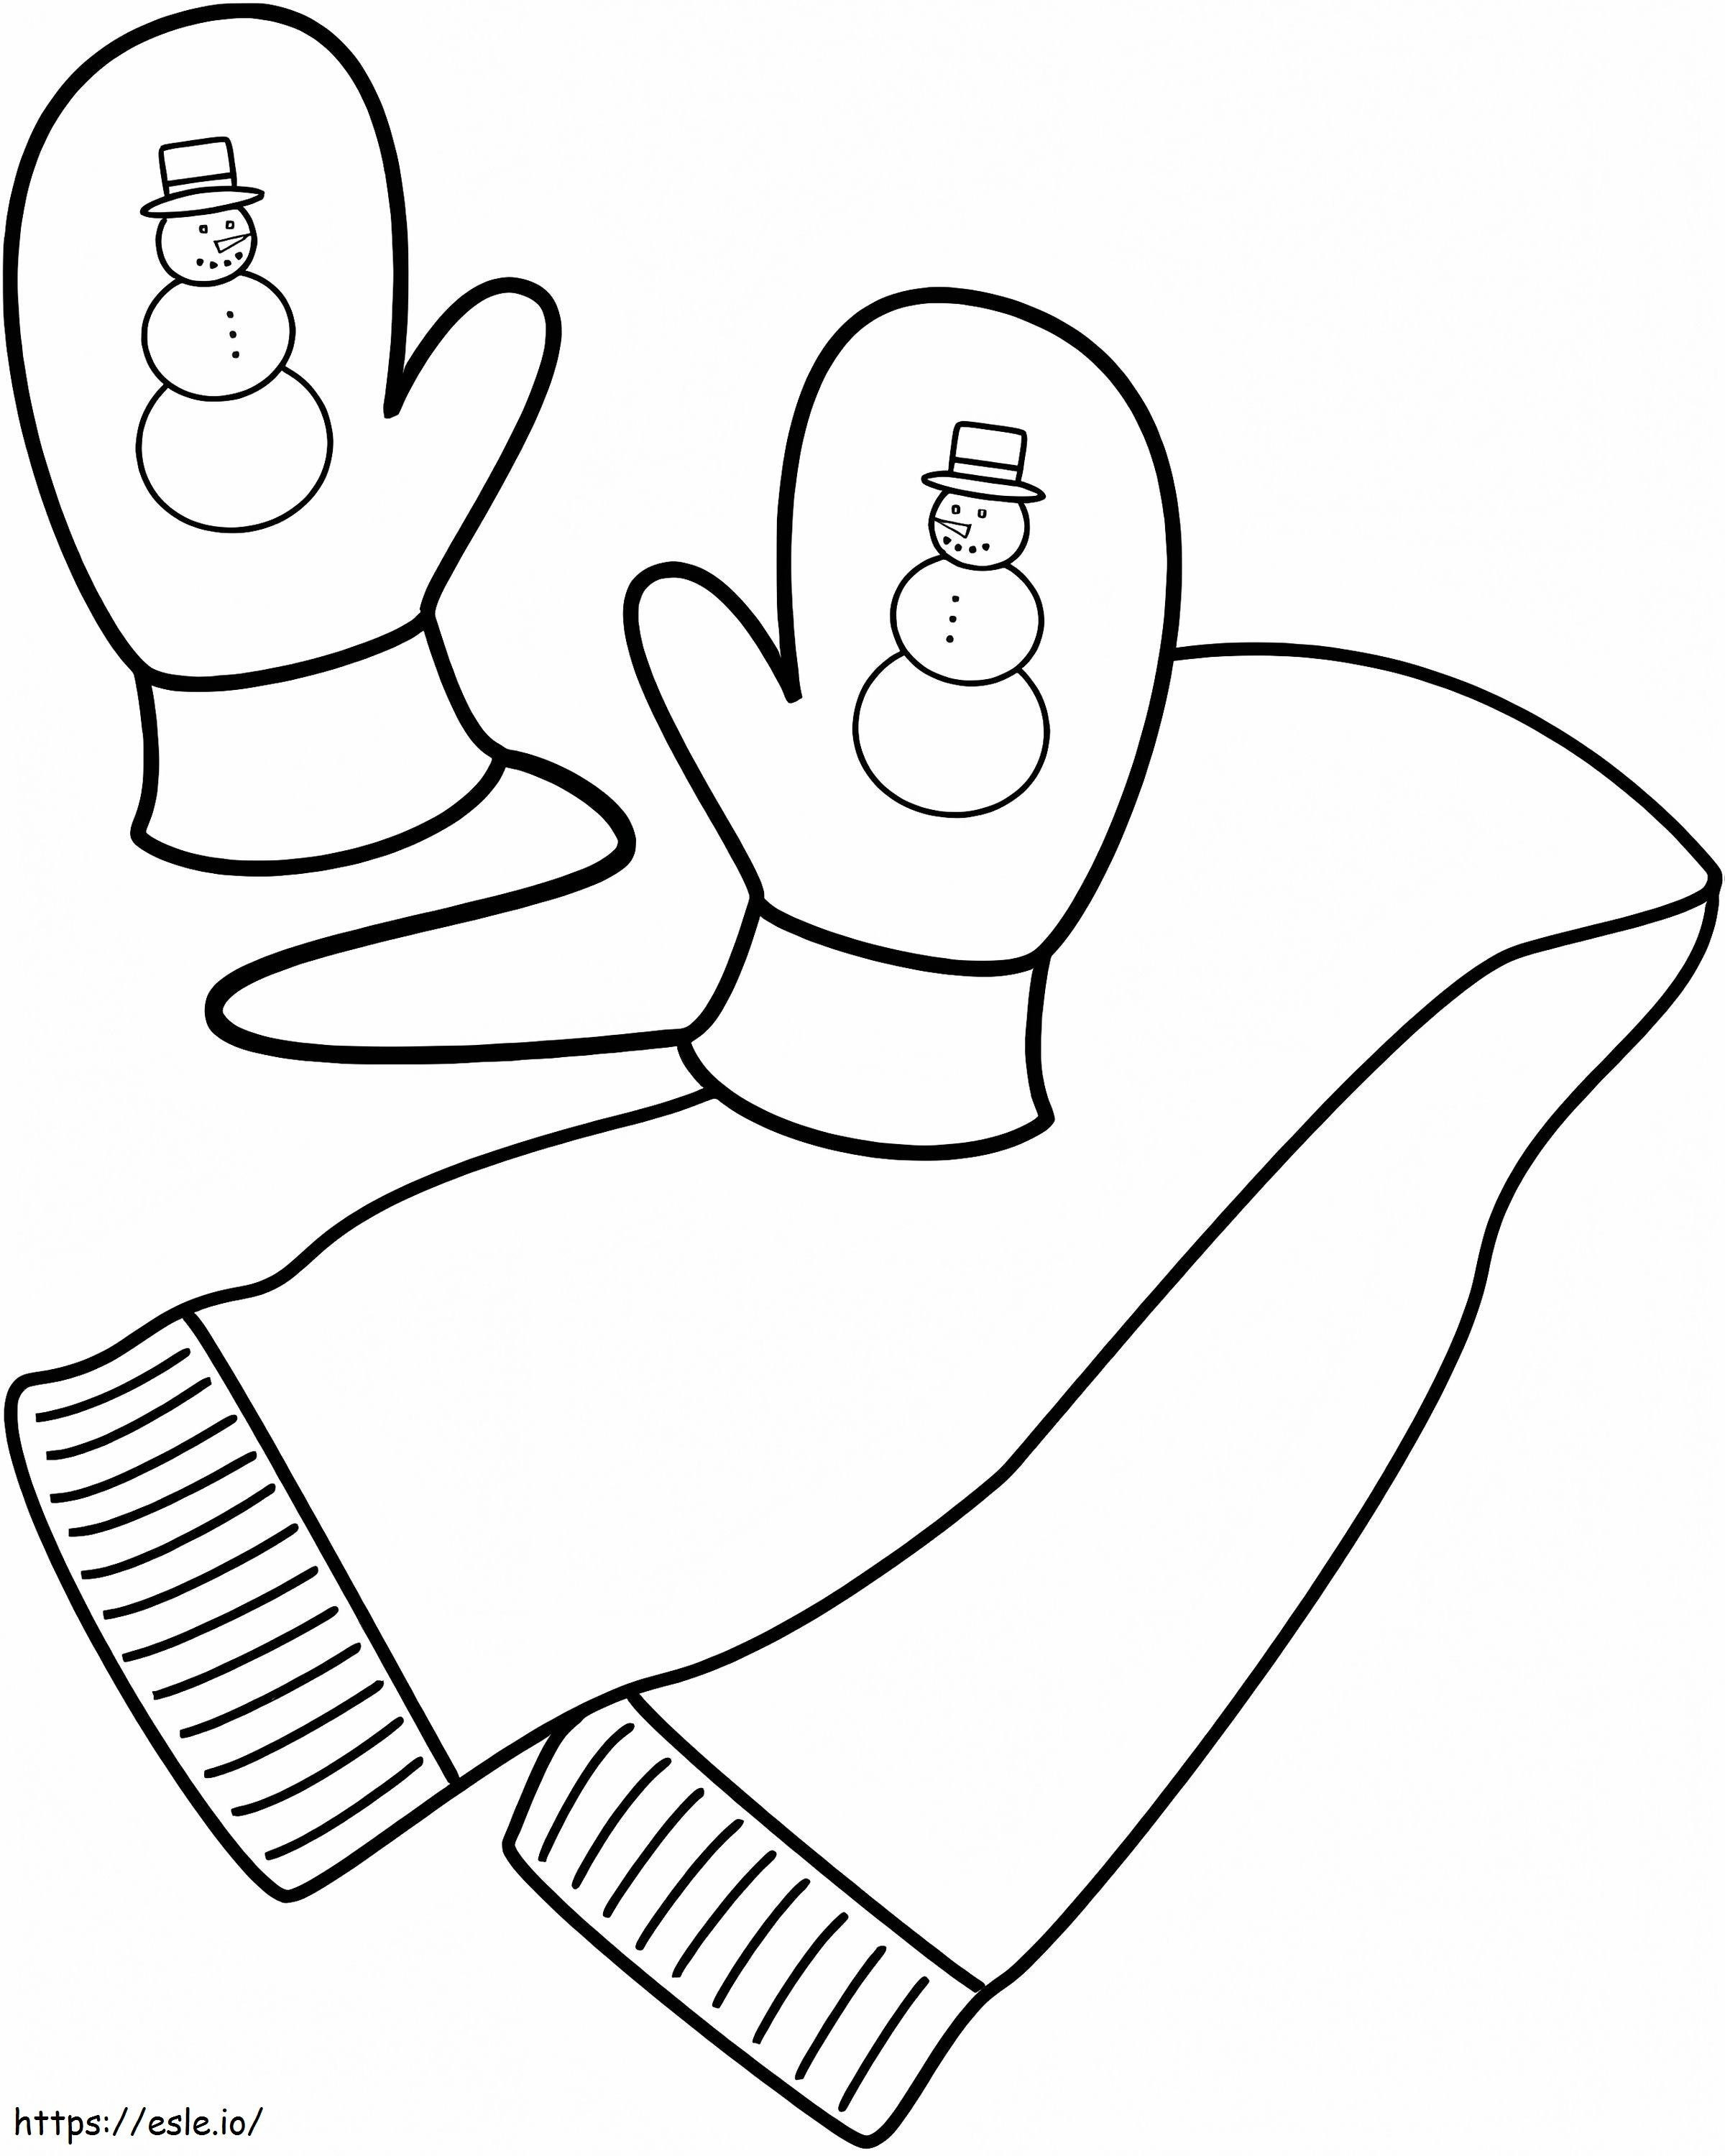 Eșarfă și mănuși de iarnă de colorat